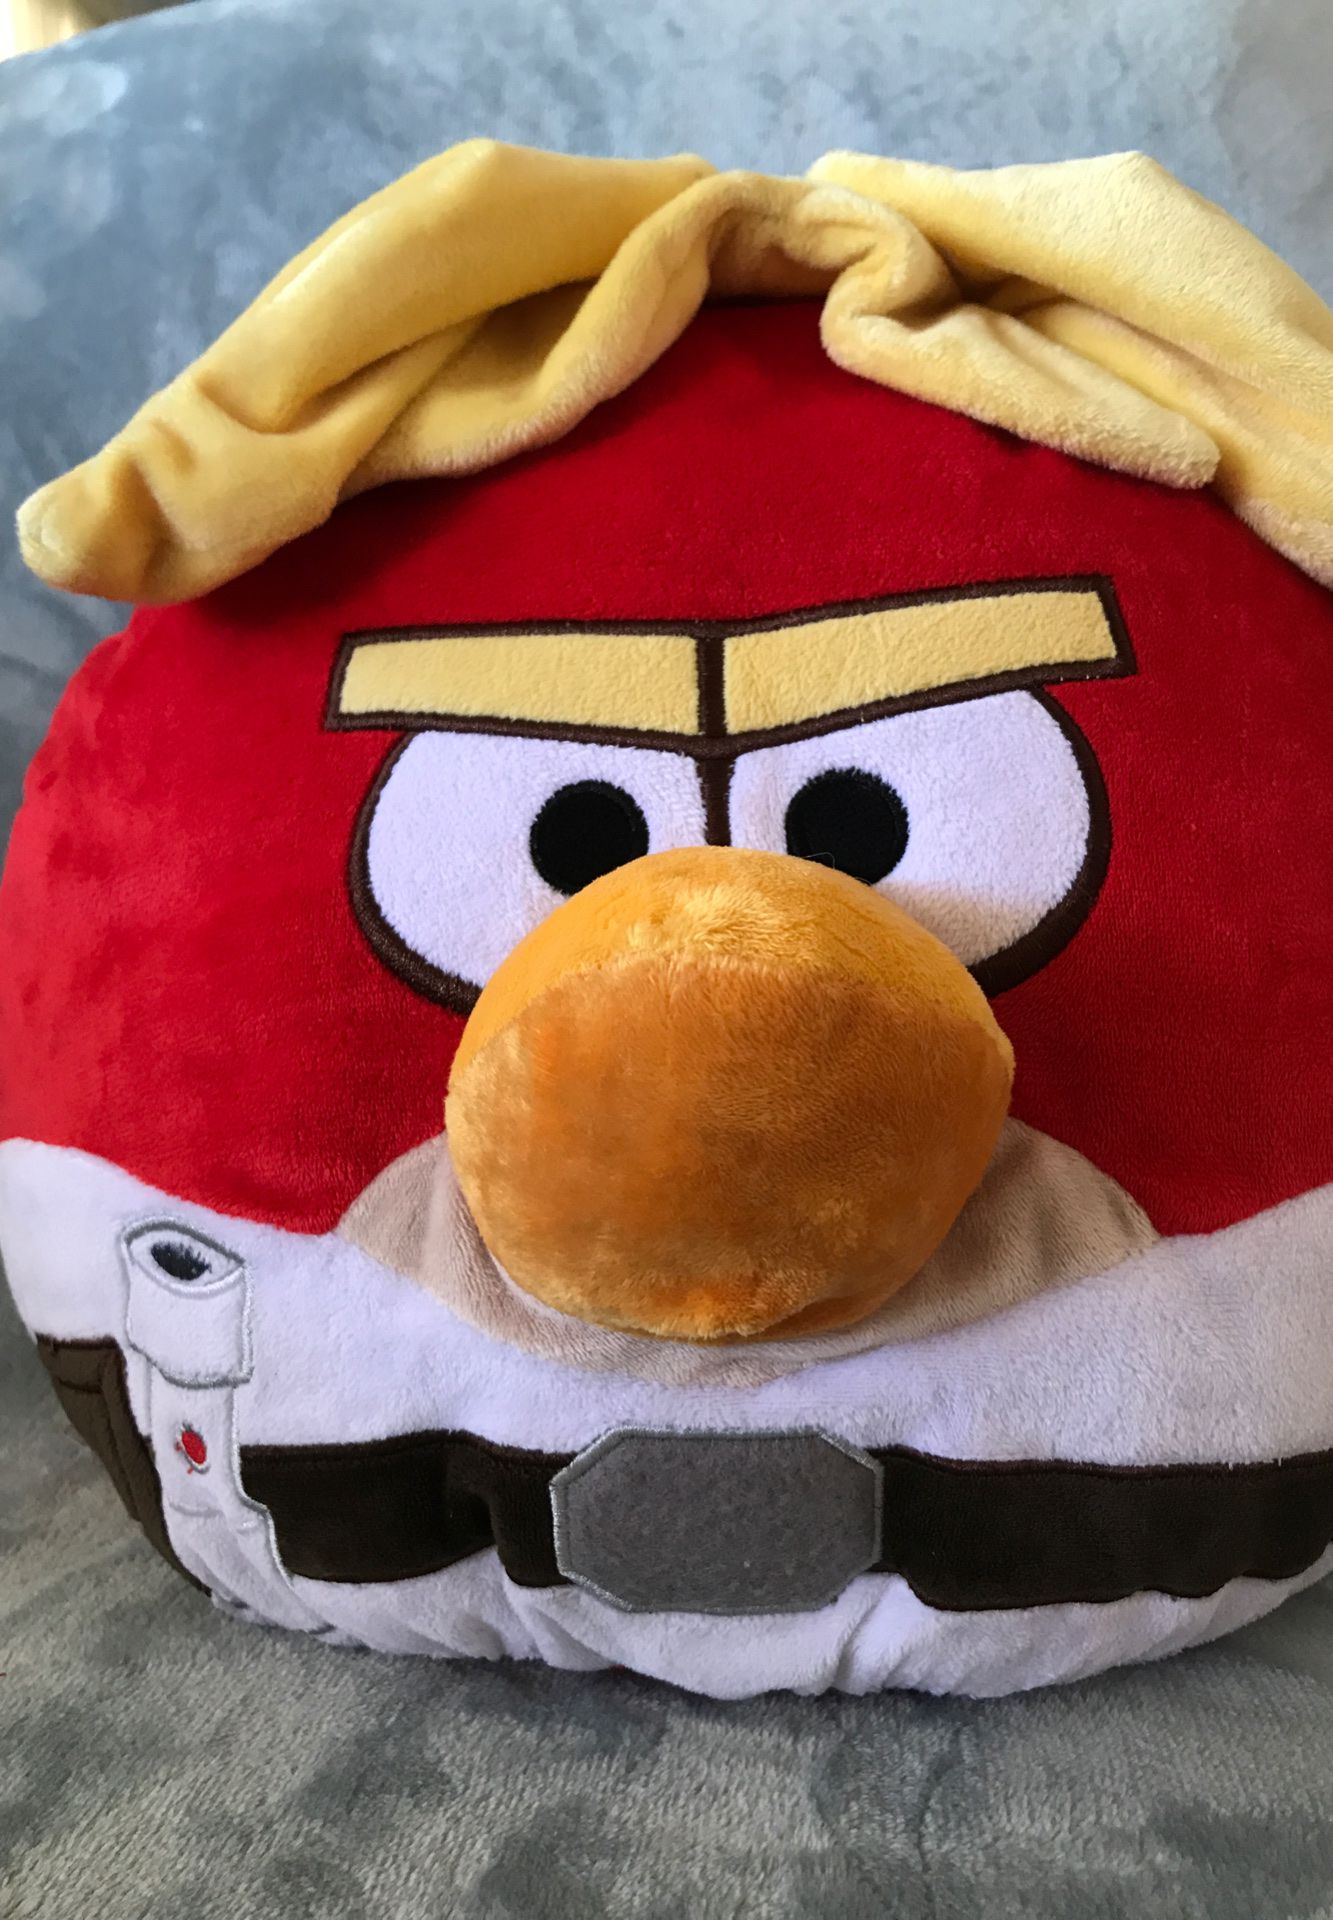 14” angry bird stuffed animal pillow